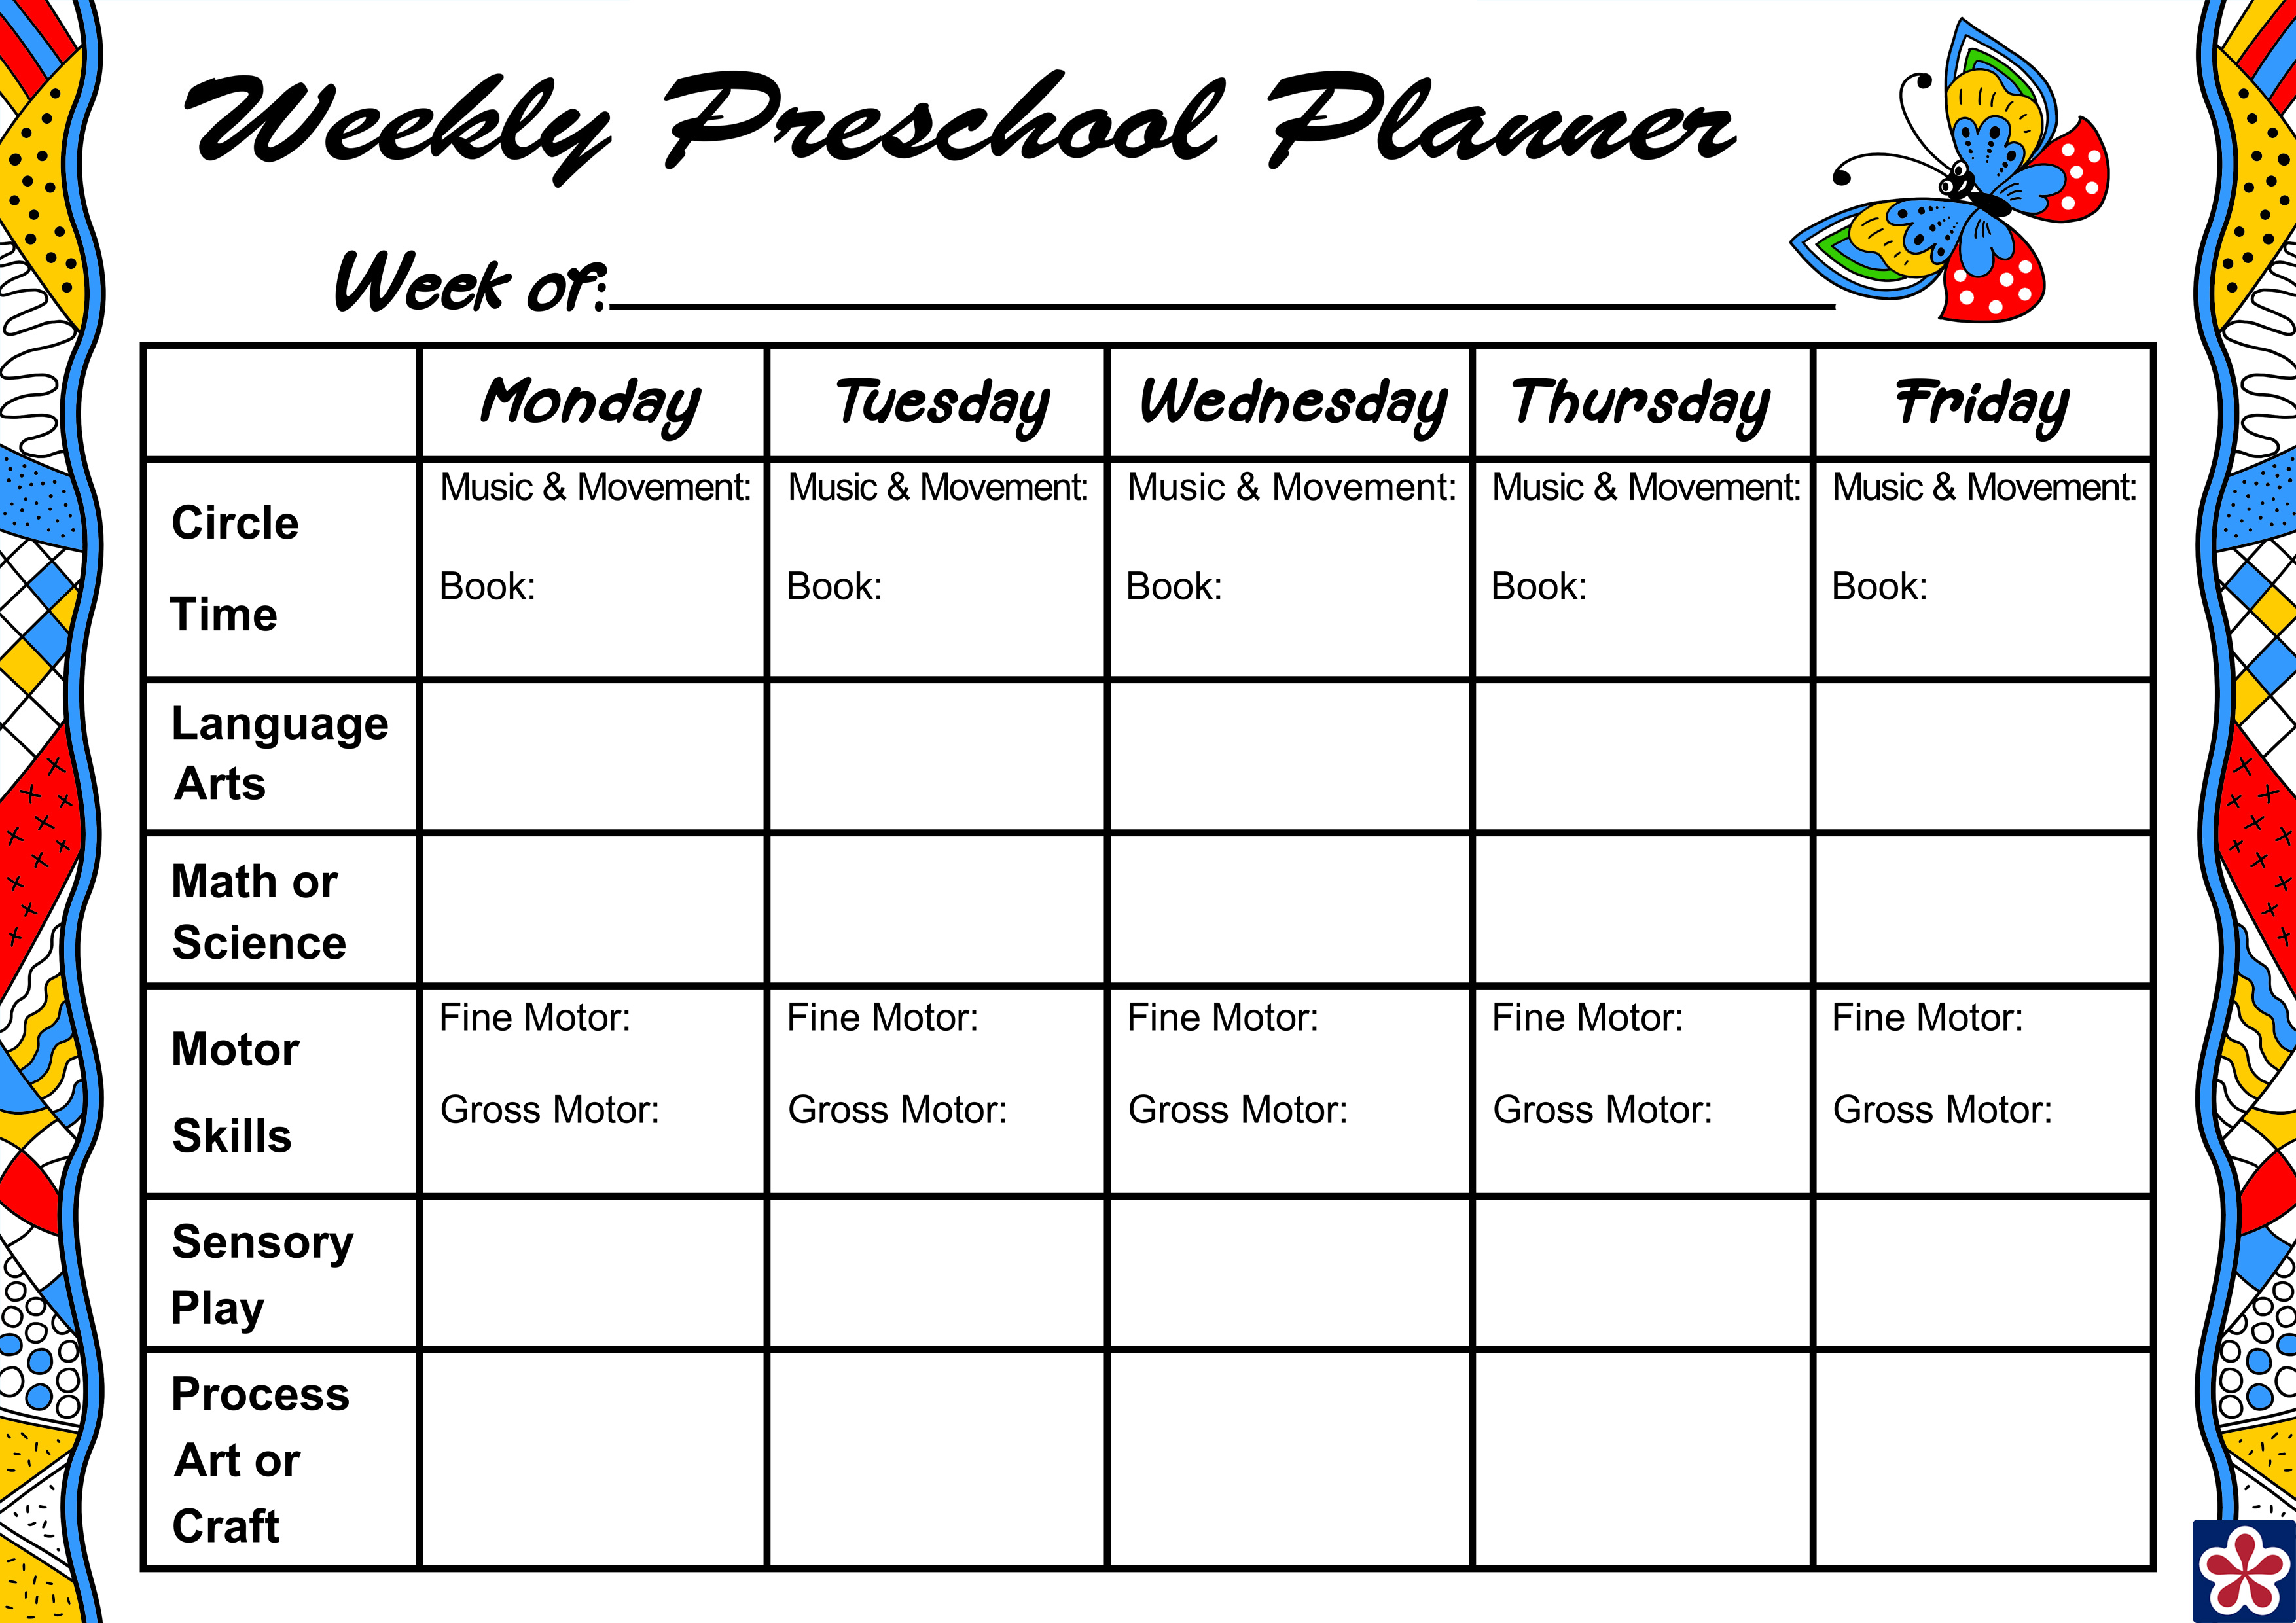 weekly-planner-for-your-preschool-class-teachersmag